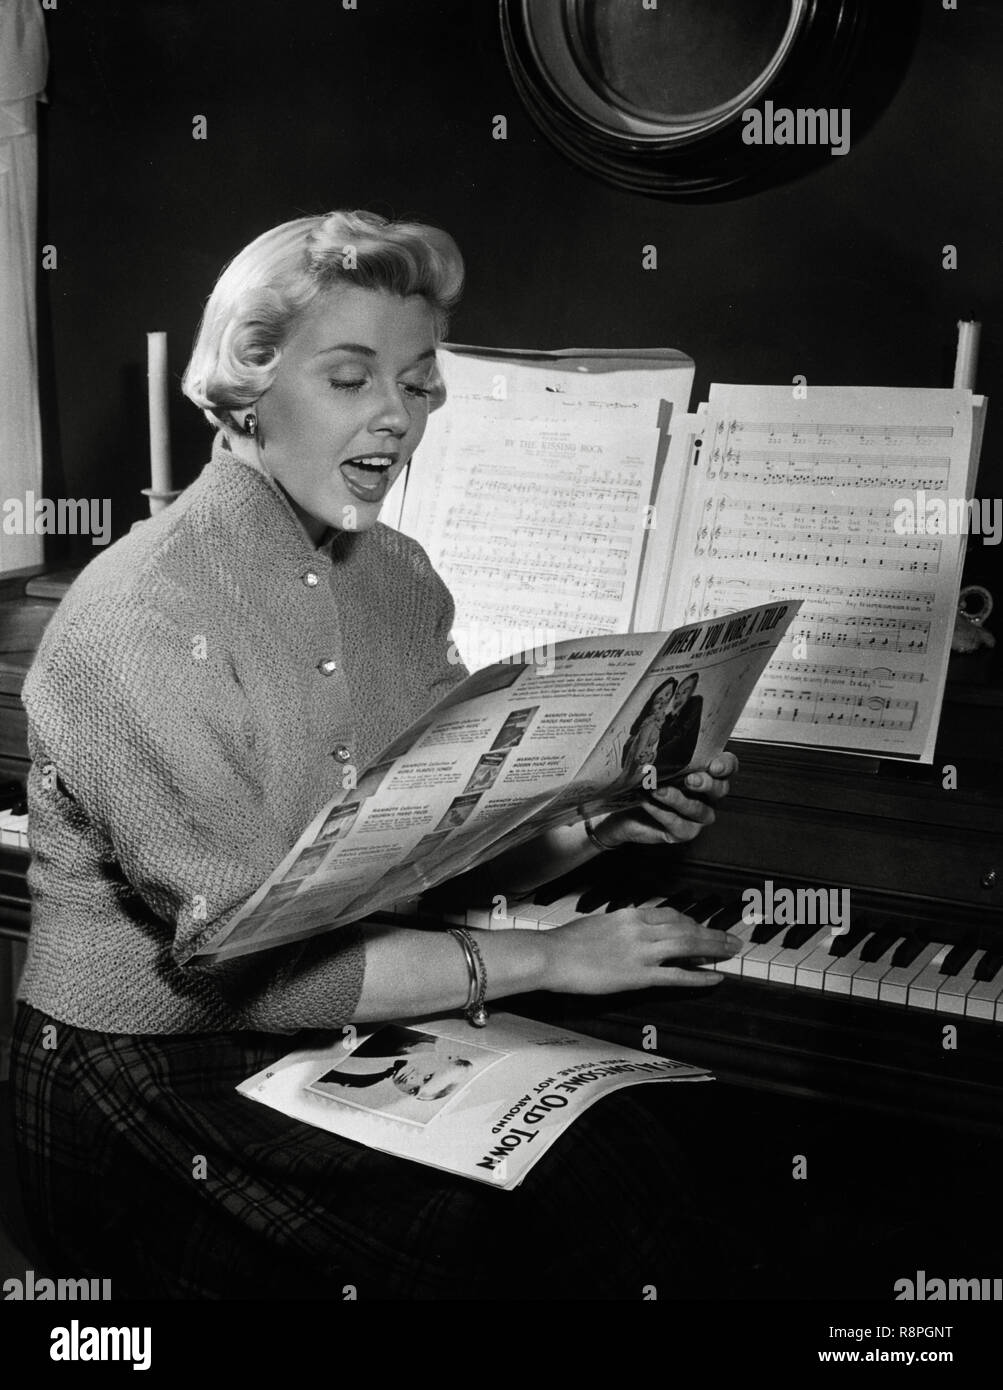 Doris Day, sitzt an einem Klavier und liest Musik singen, ca. 1952 Datei Referenz # 33635 643 THA Stockfoto